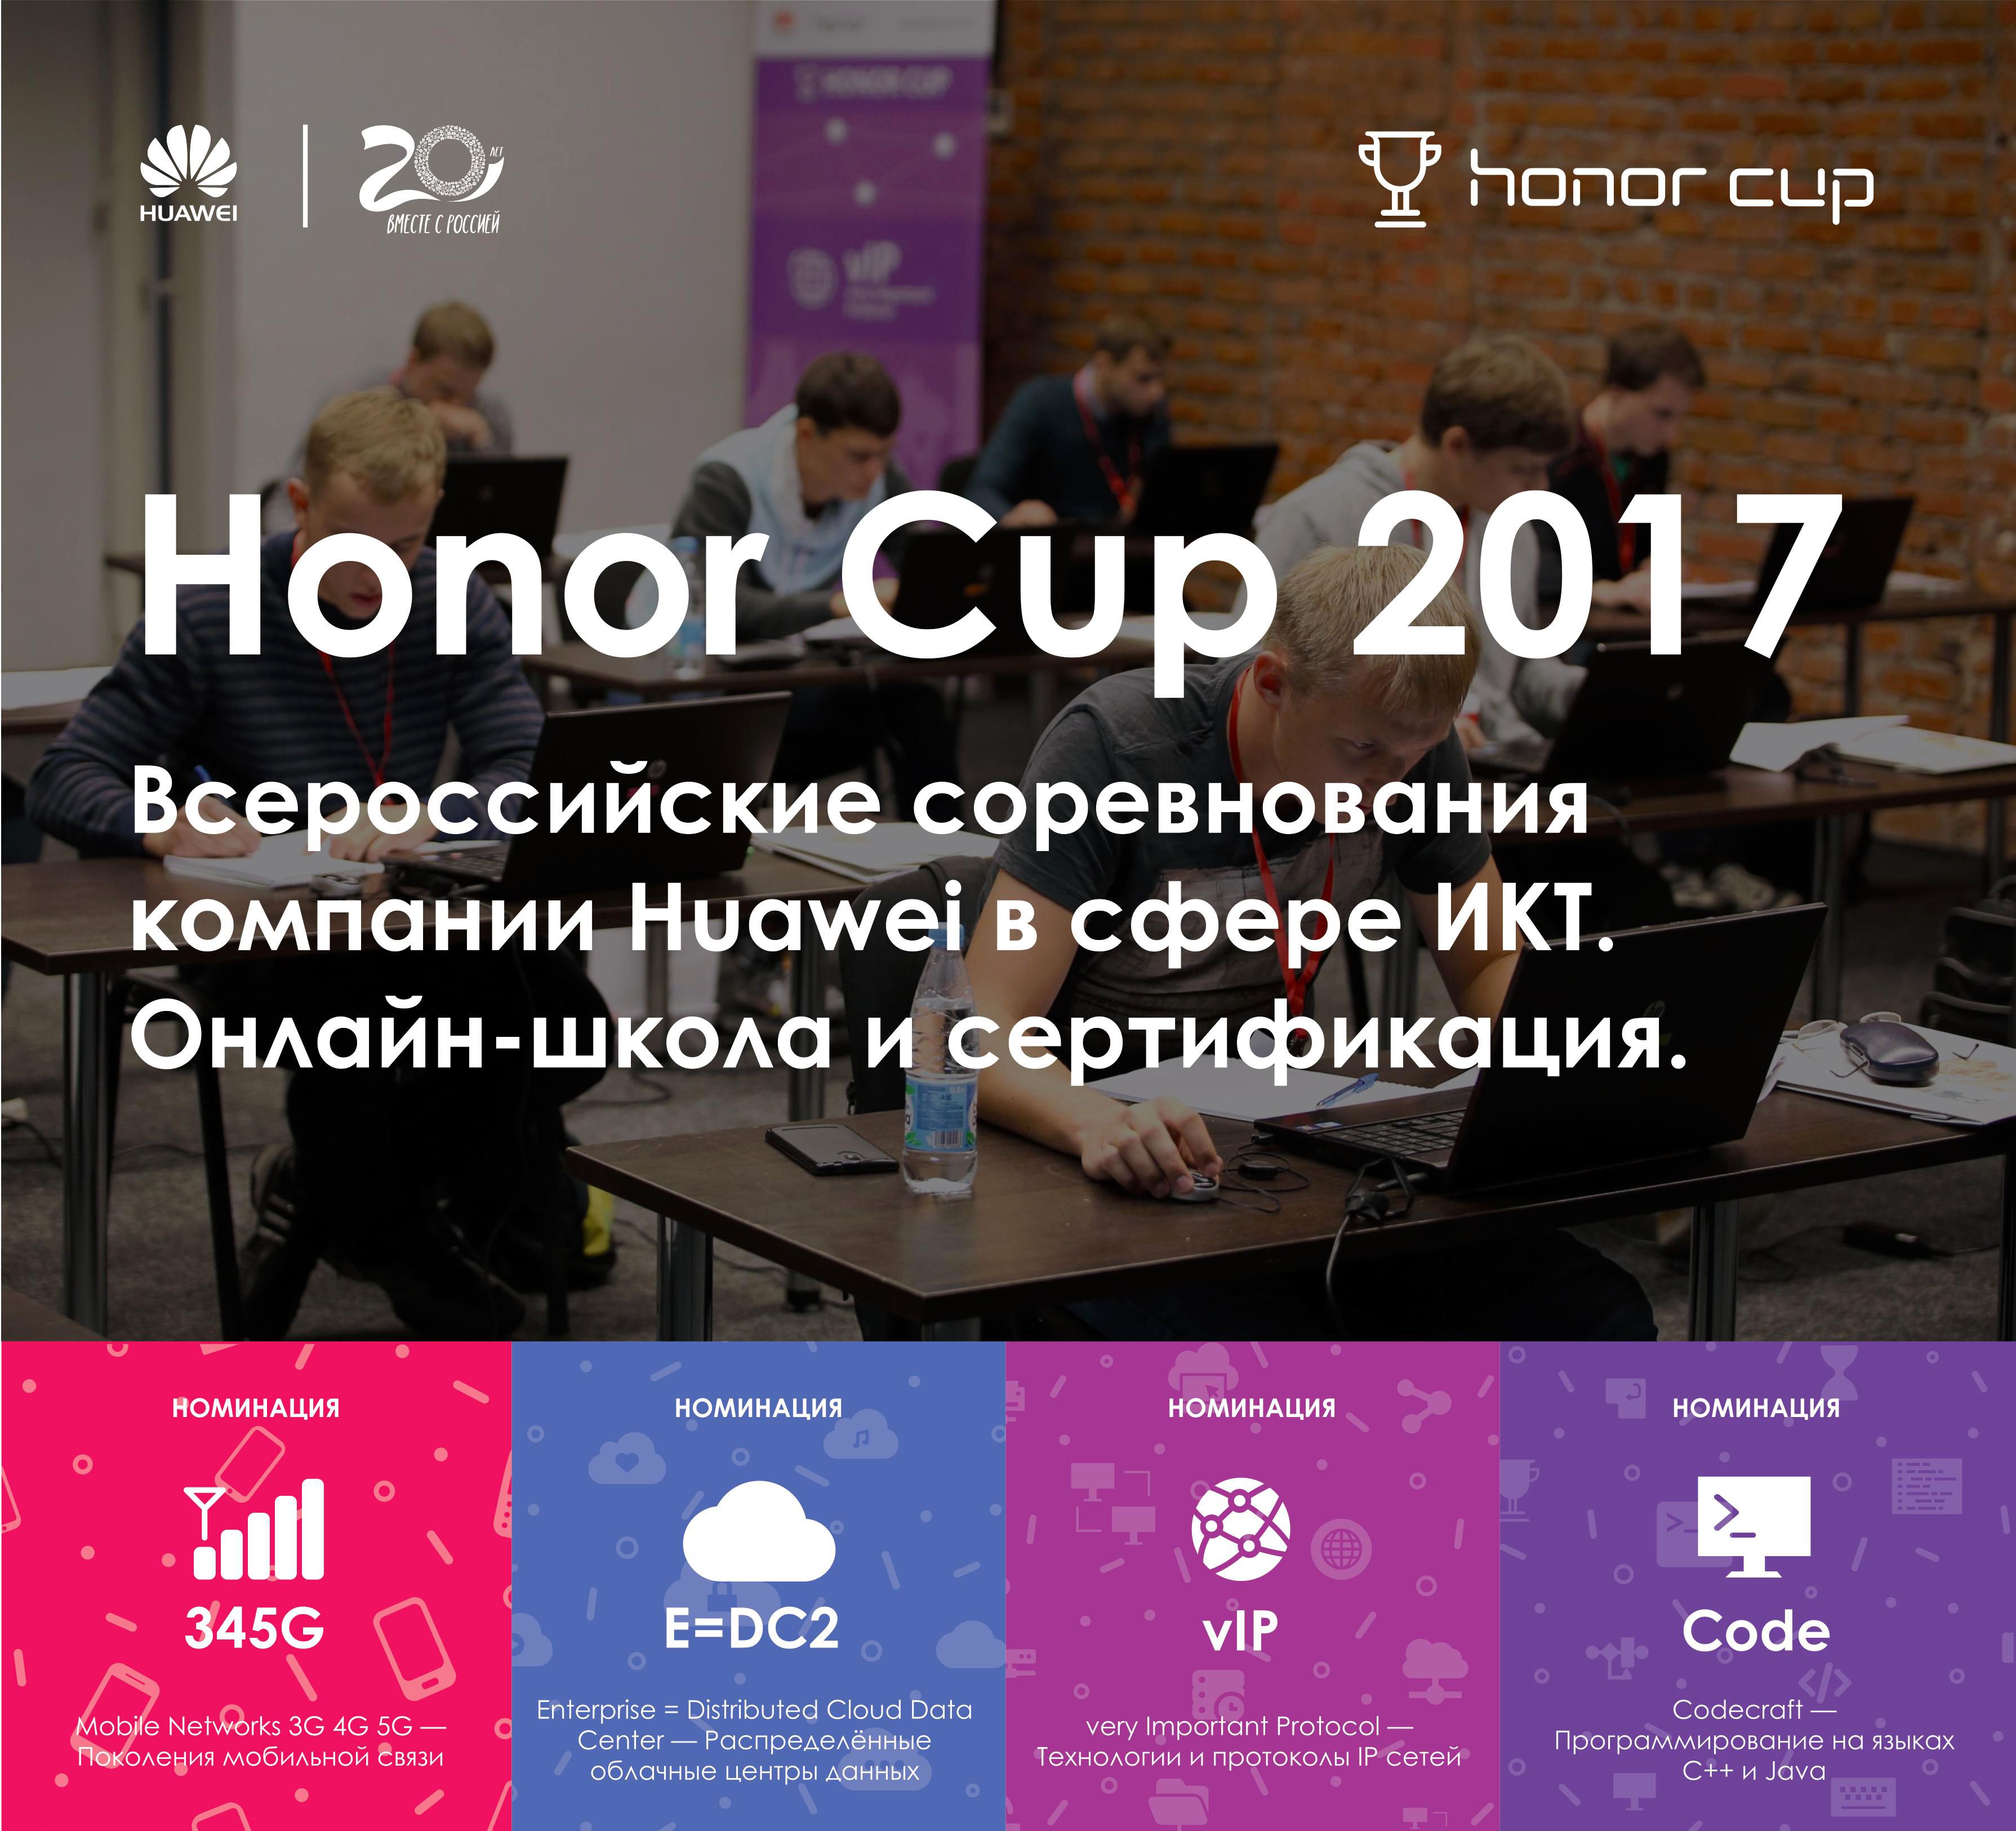 Студенты кафедры информационных технологий БГИТУ приняли участие во Всероссийских соревнованиях-2017 Honor Cup